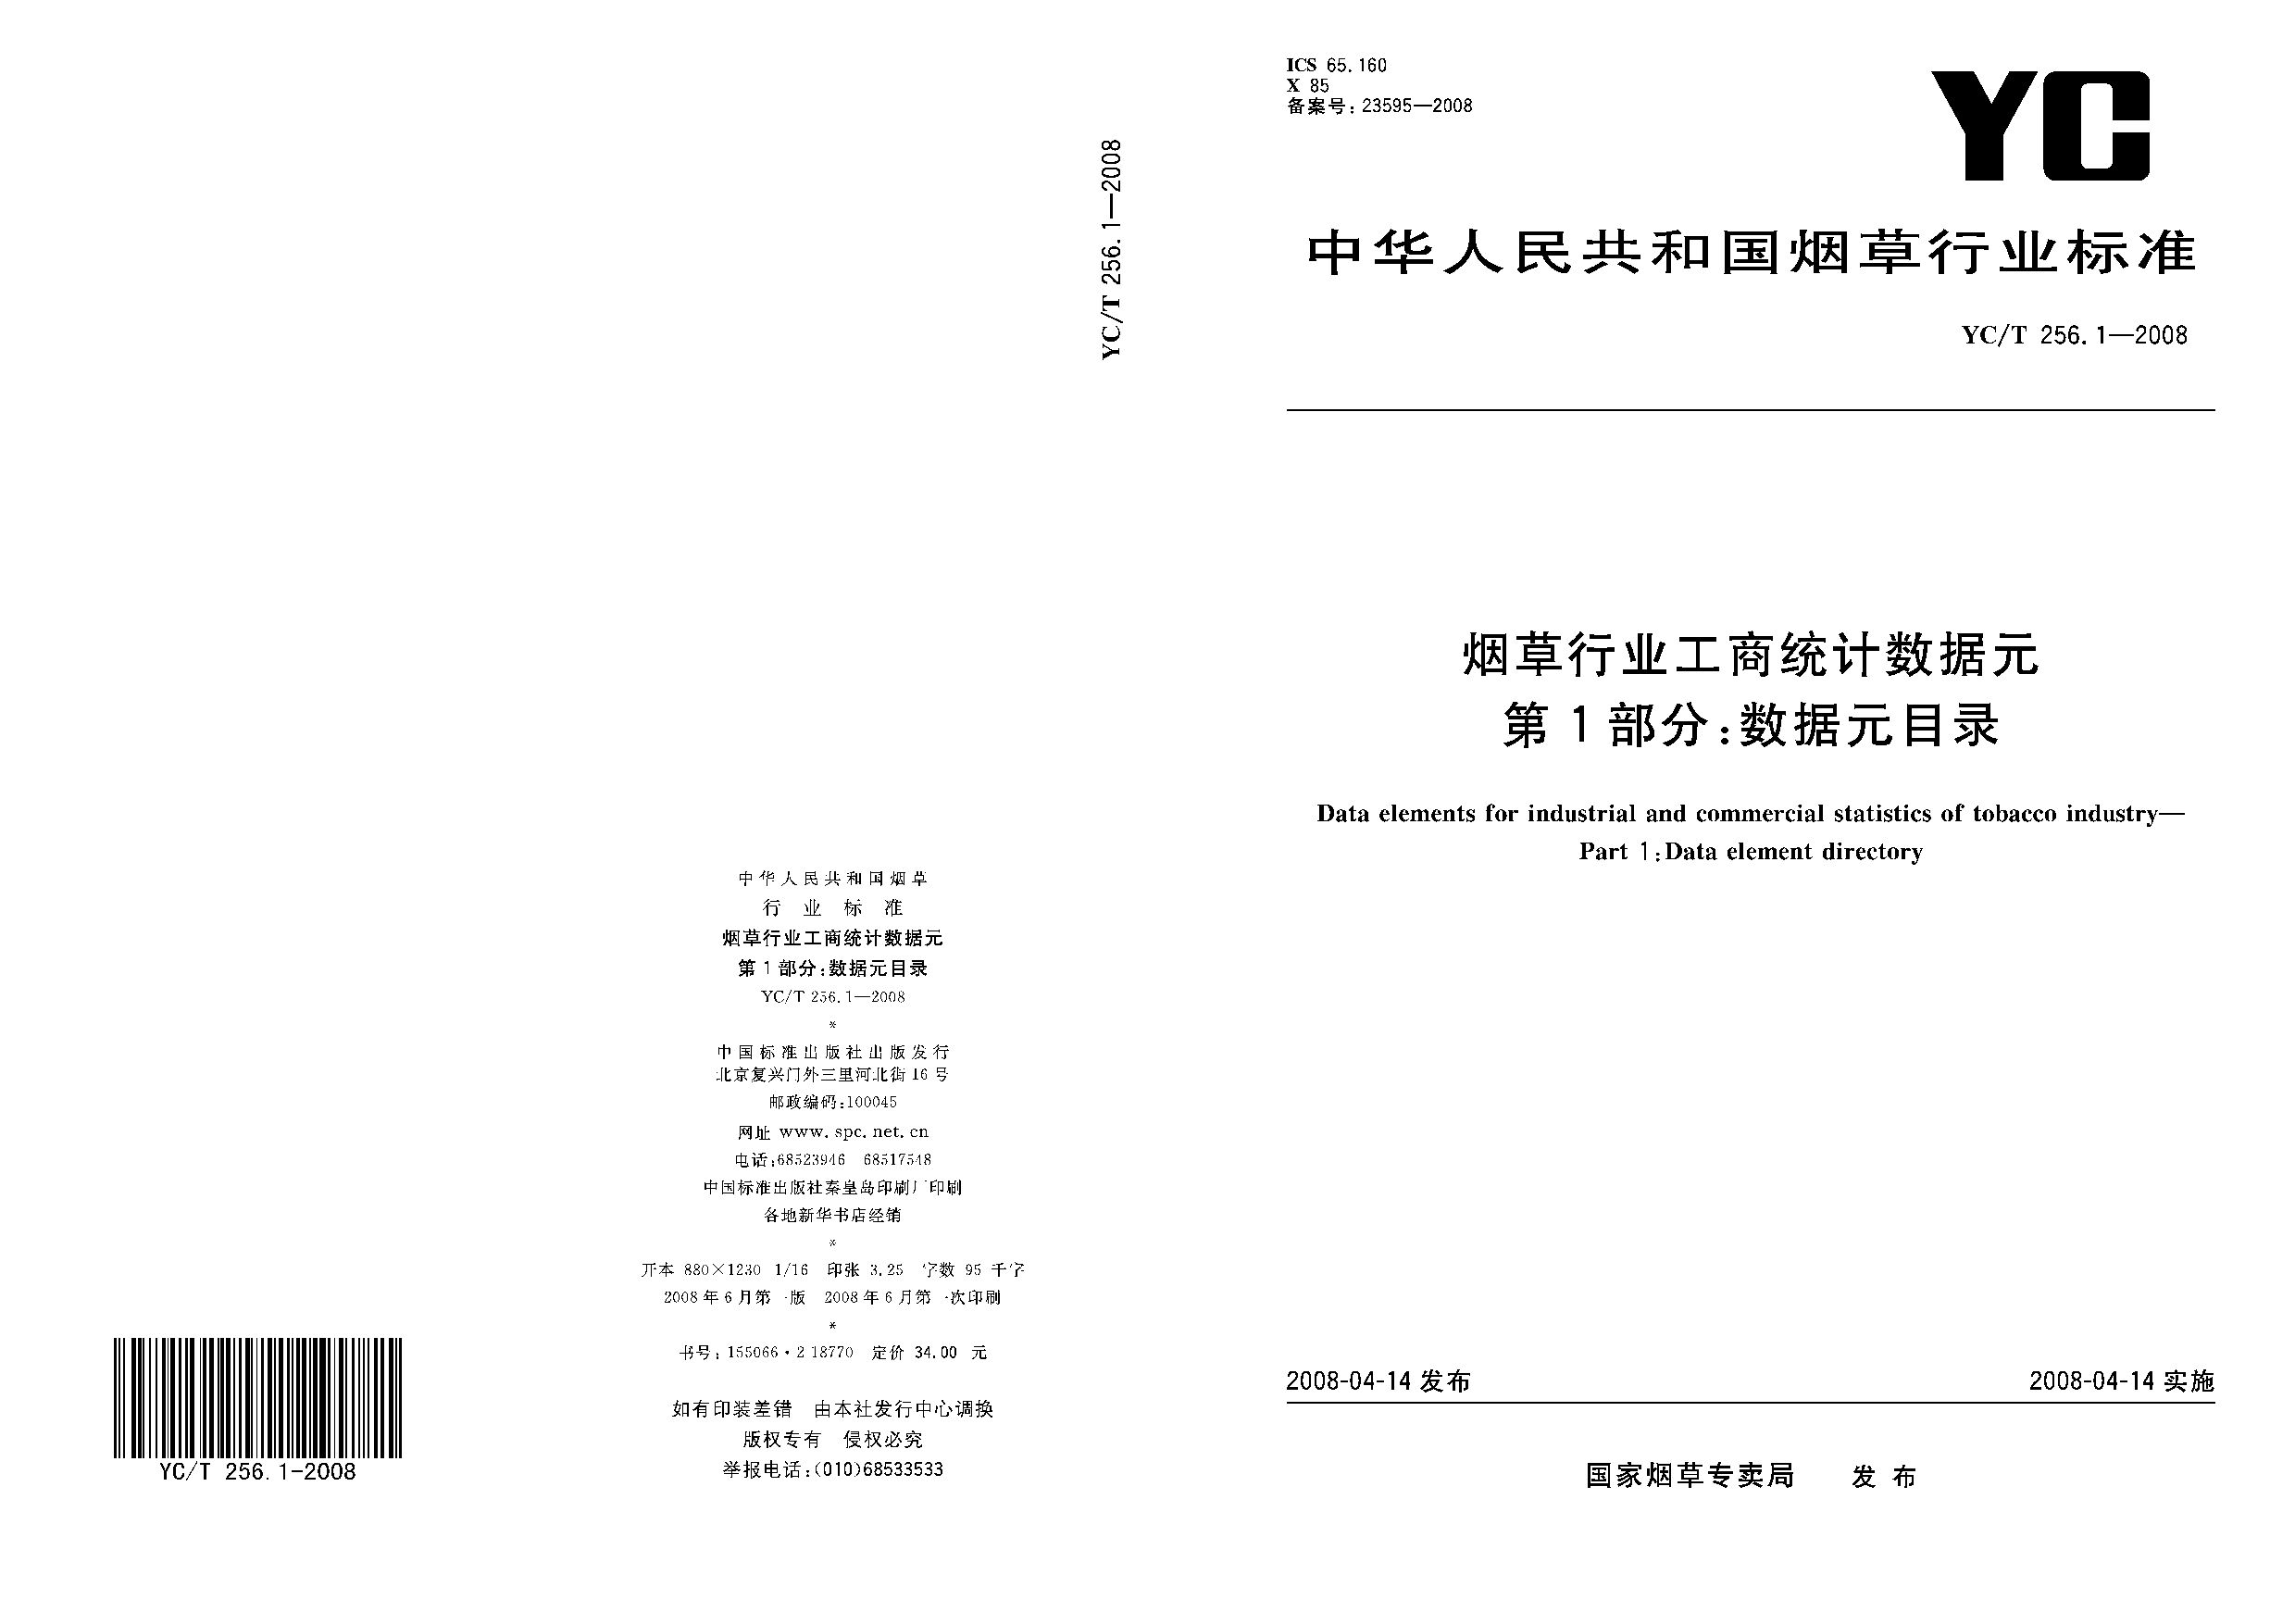 YC/T 256.1-2008封面图